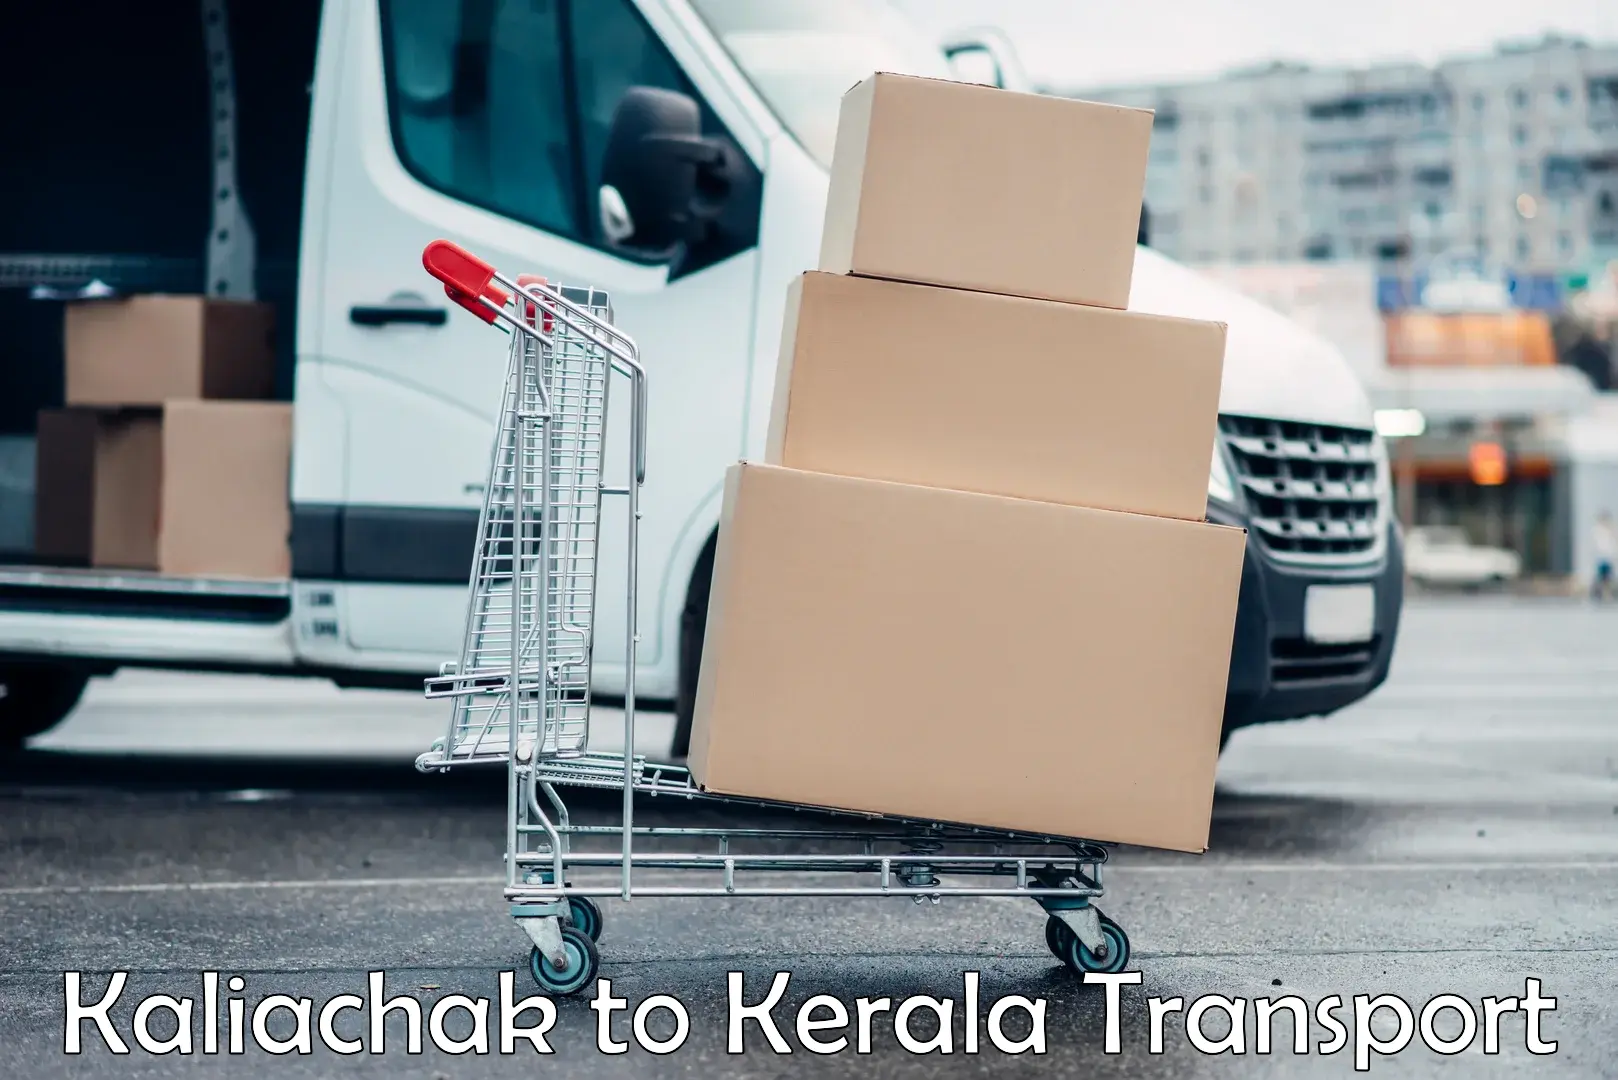 Pick up transport service Kaliachak to Kallikkad